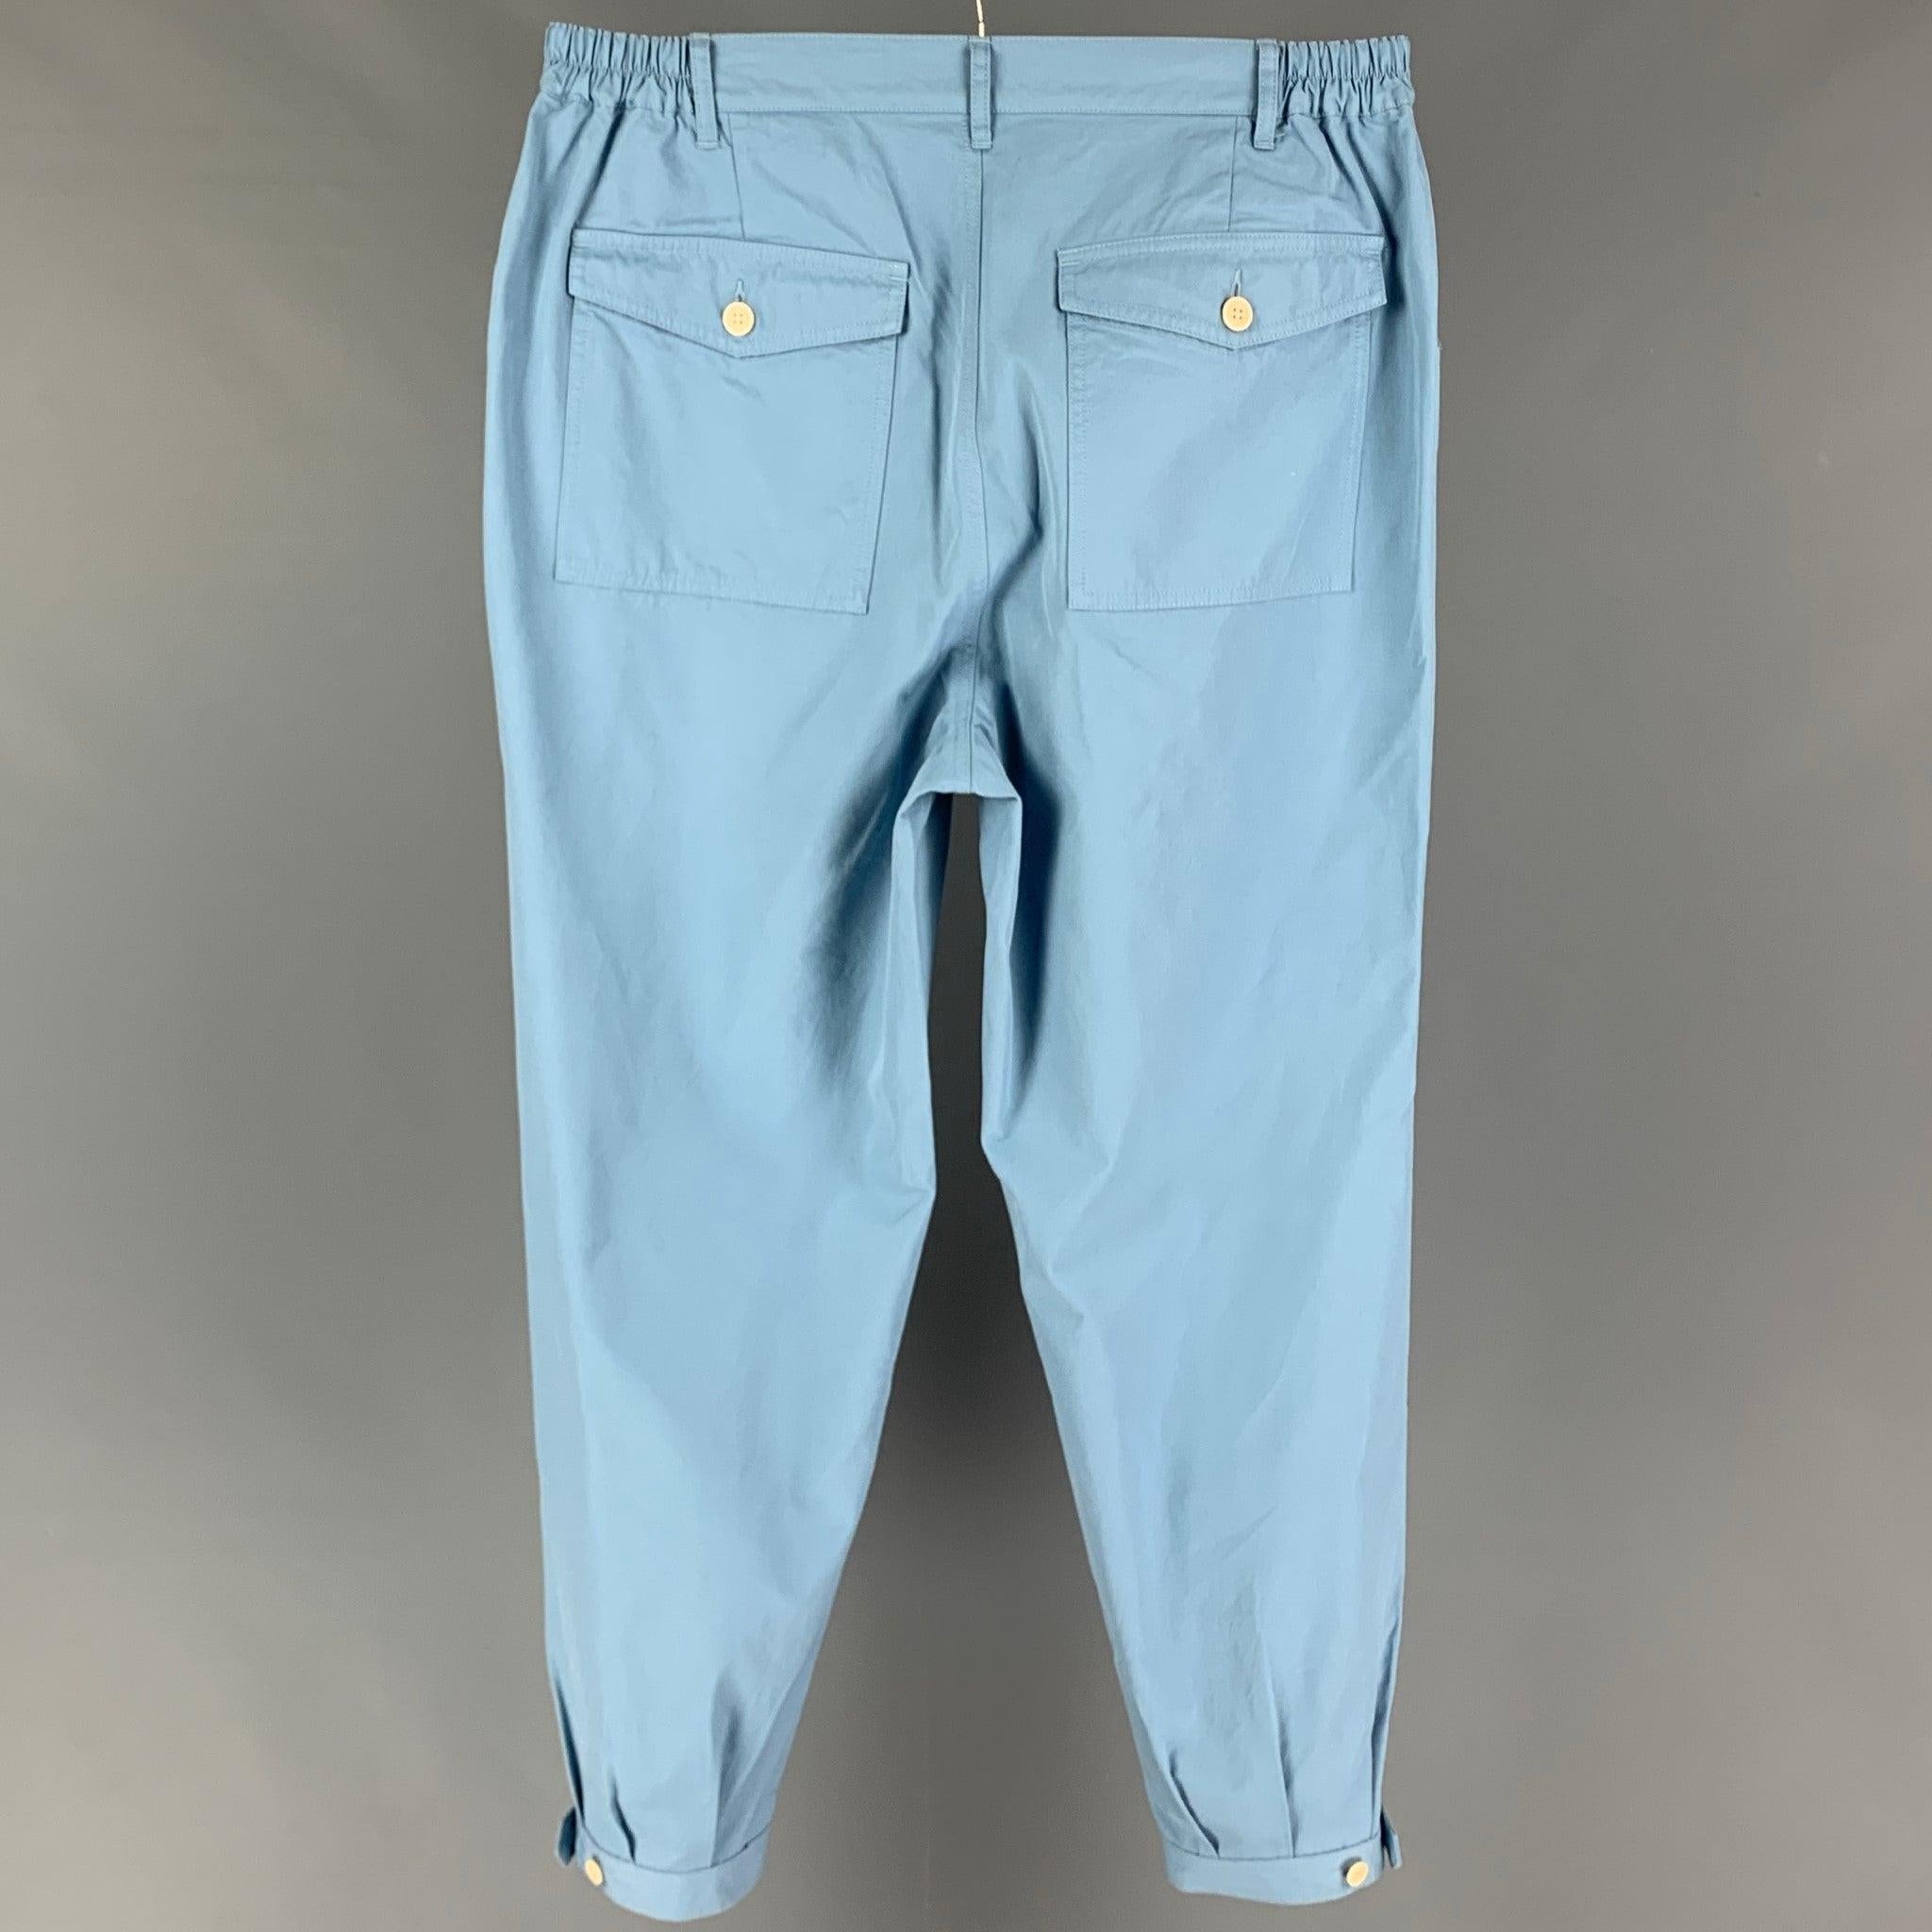 Die VISVIM 'Carroll' Hose aus hellblauer Baumwolle hat einen elastischen Bund, geknöpfte Bündchen, eine verstellbare Lasche und einen Hosenschlitz mit Reißverschluss. Hergestellt in Japan.
Neu mit Tags.
 

Markiert:   JP 3 

Abmessungen: 
  Taille: